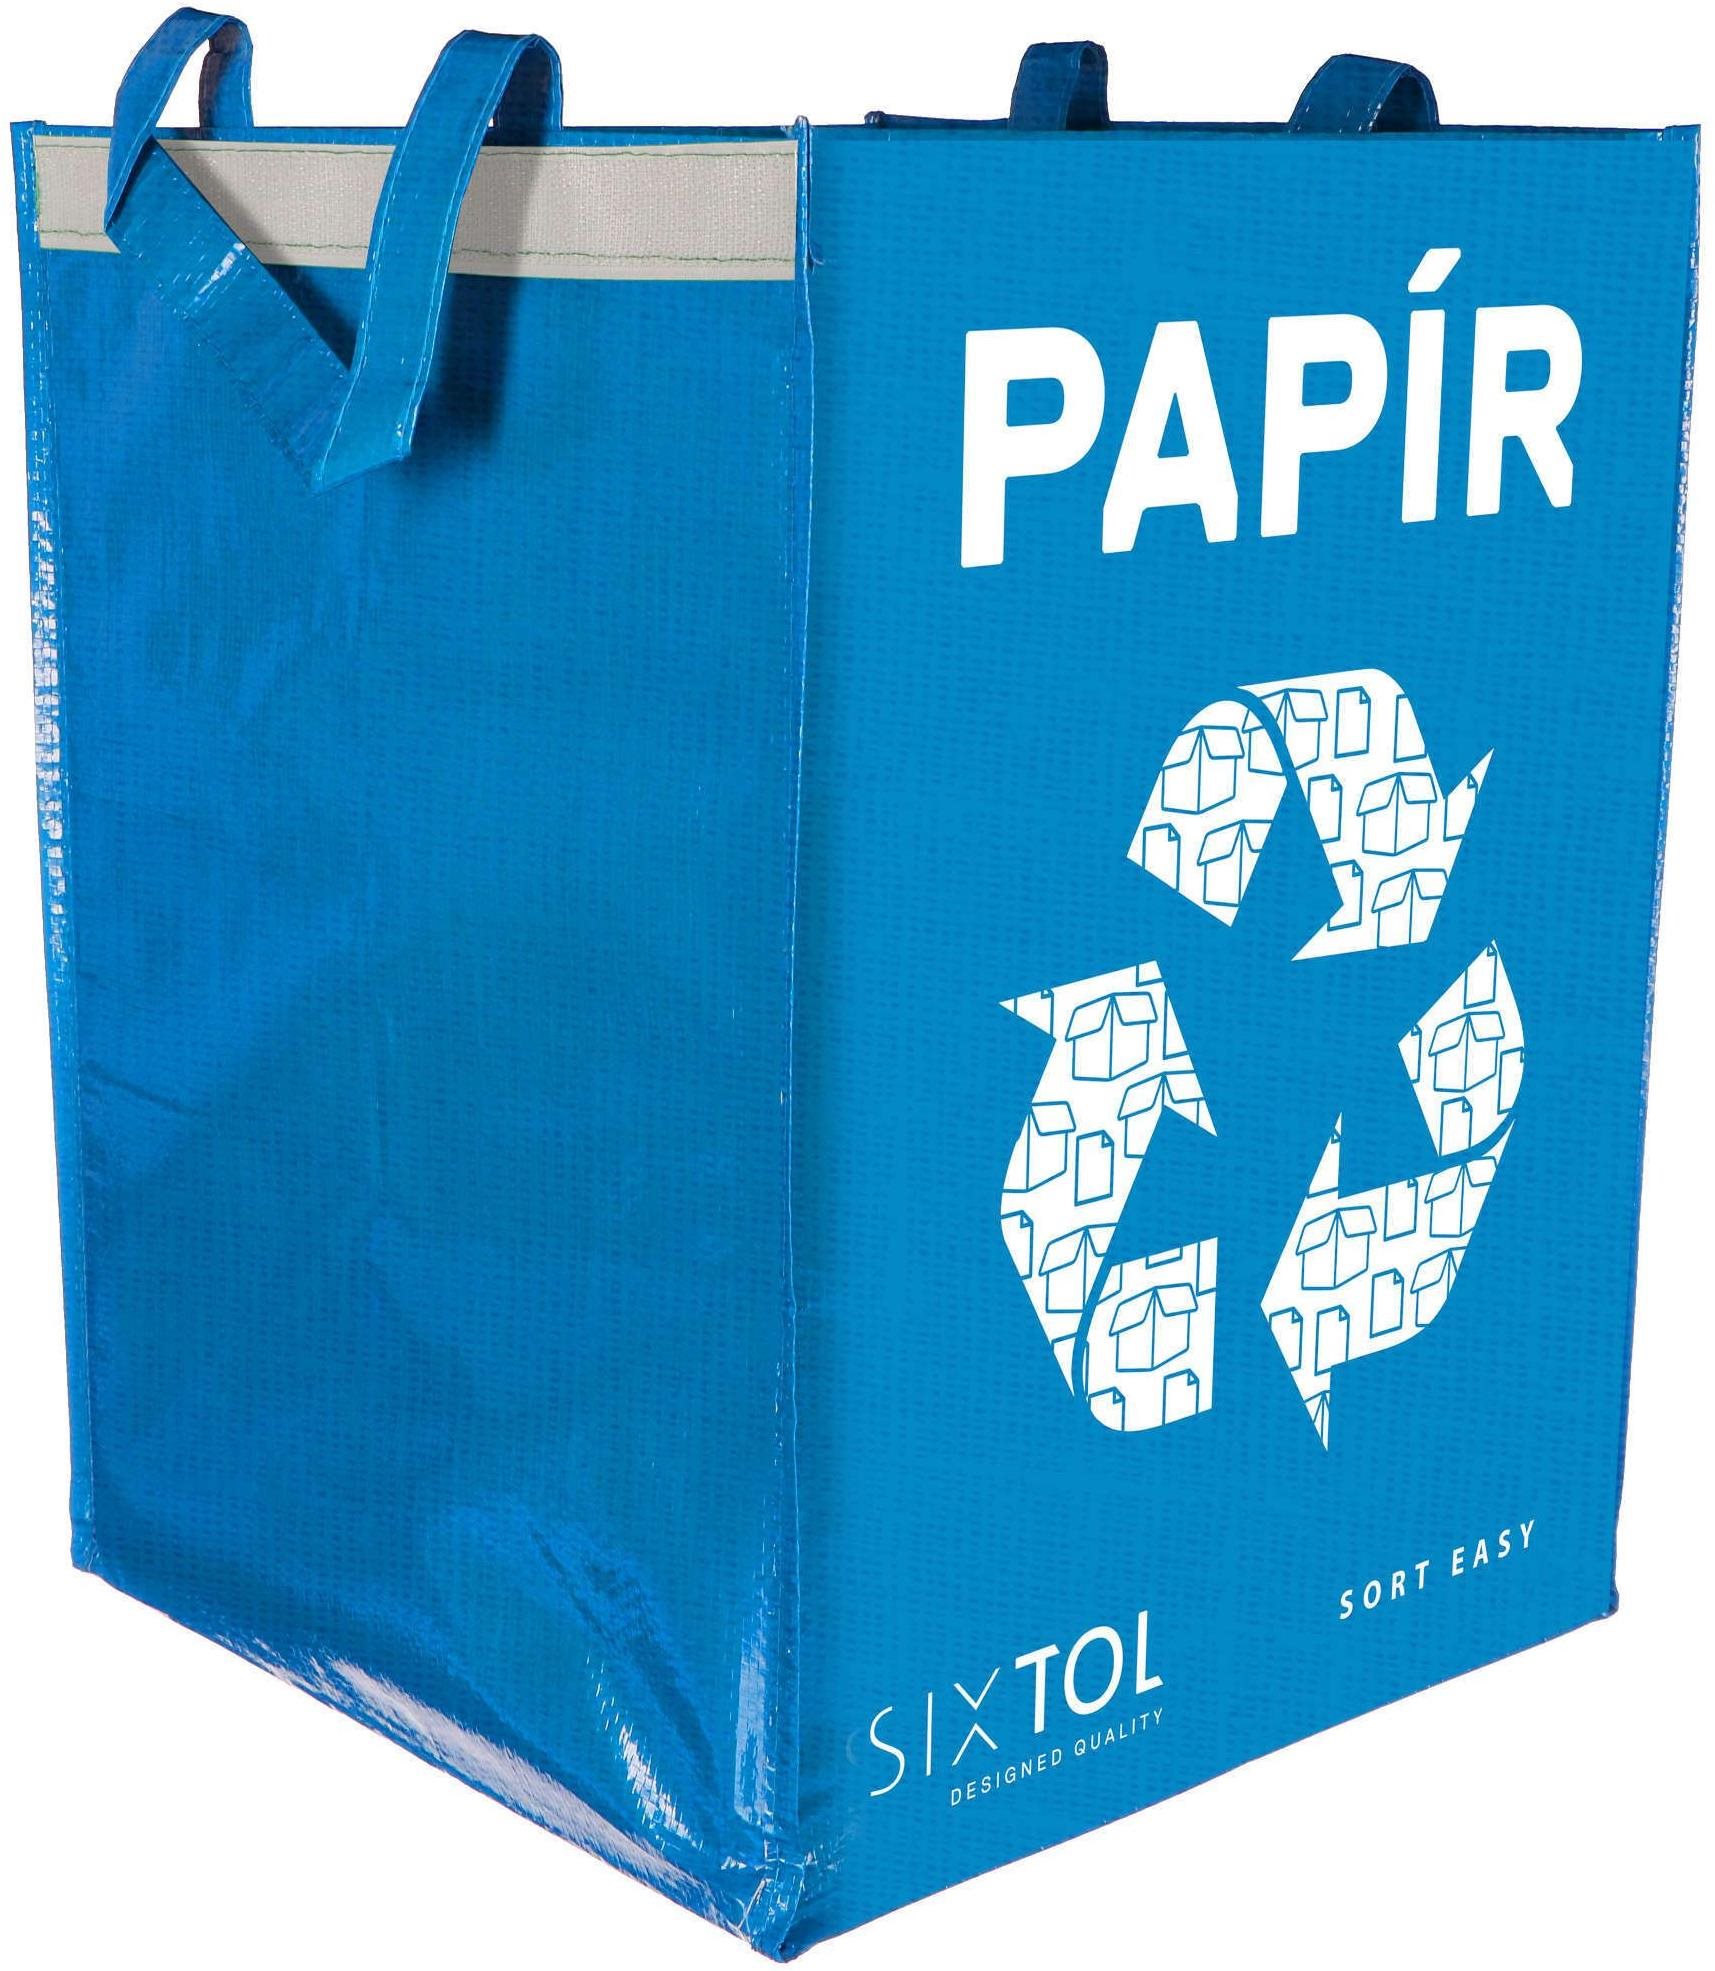 Szemetes SIXTOL zsák szelektált hulladékhoz SORT EASY PAPÍR